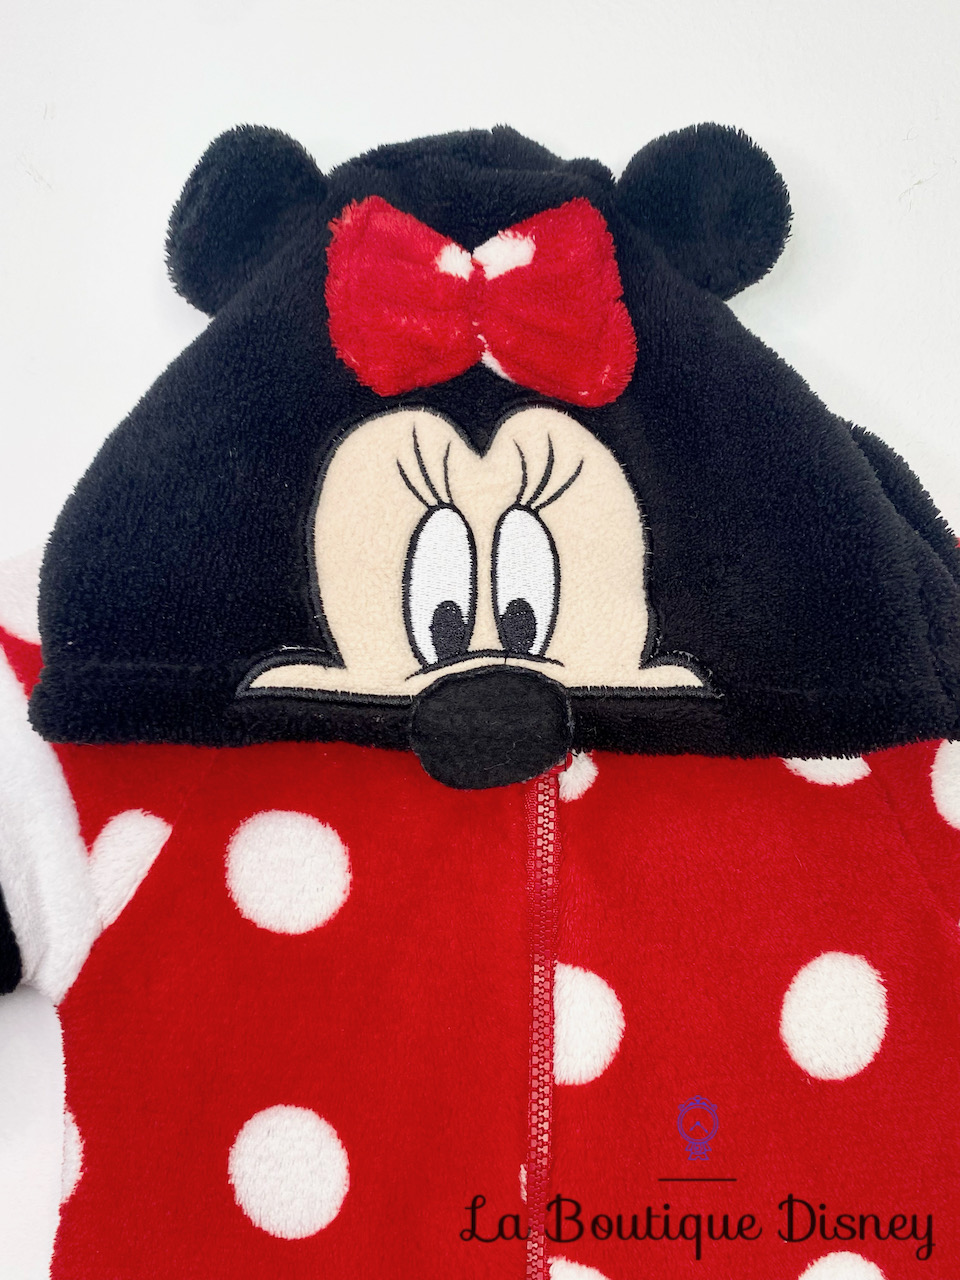 deguisement-combinaison-minnie-mouse-disney-baby-rouge-noir-pois-capuche-polaire-1